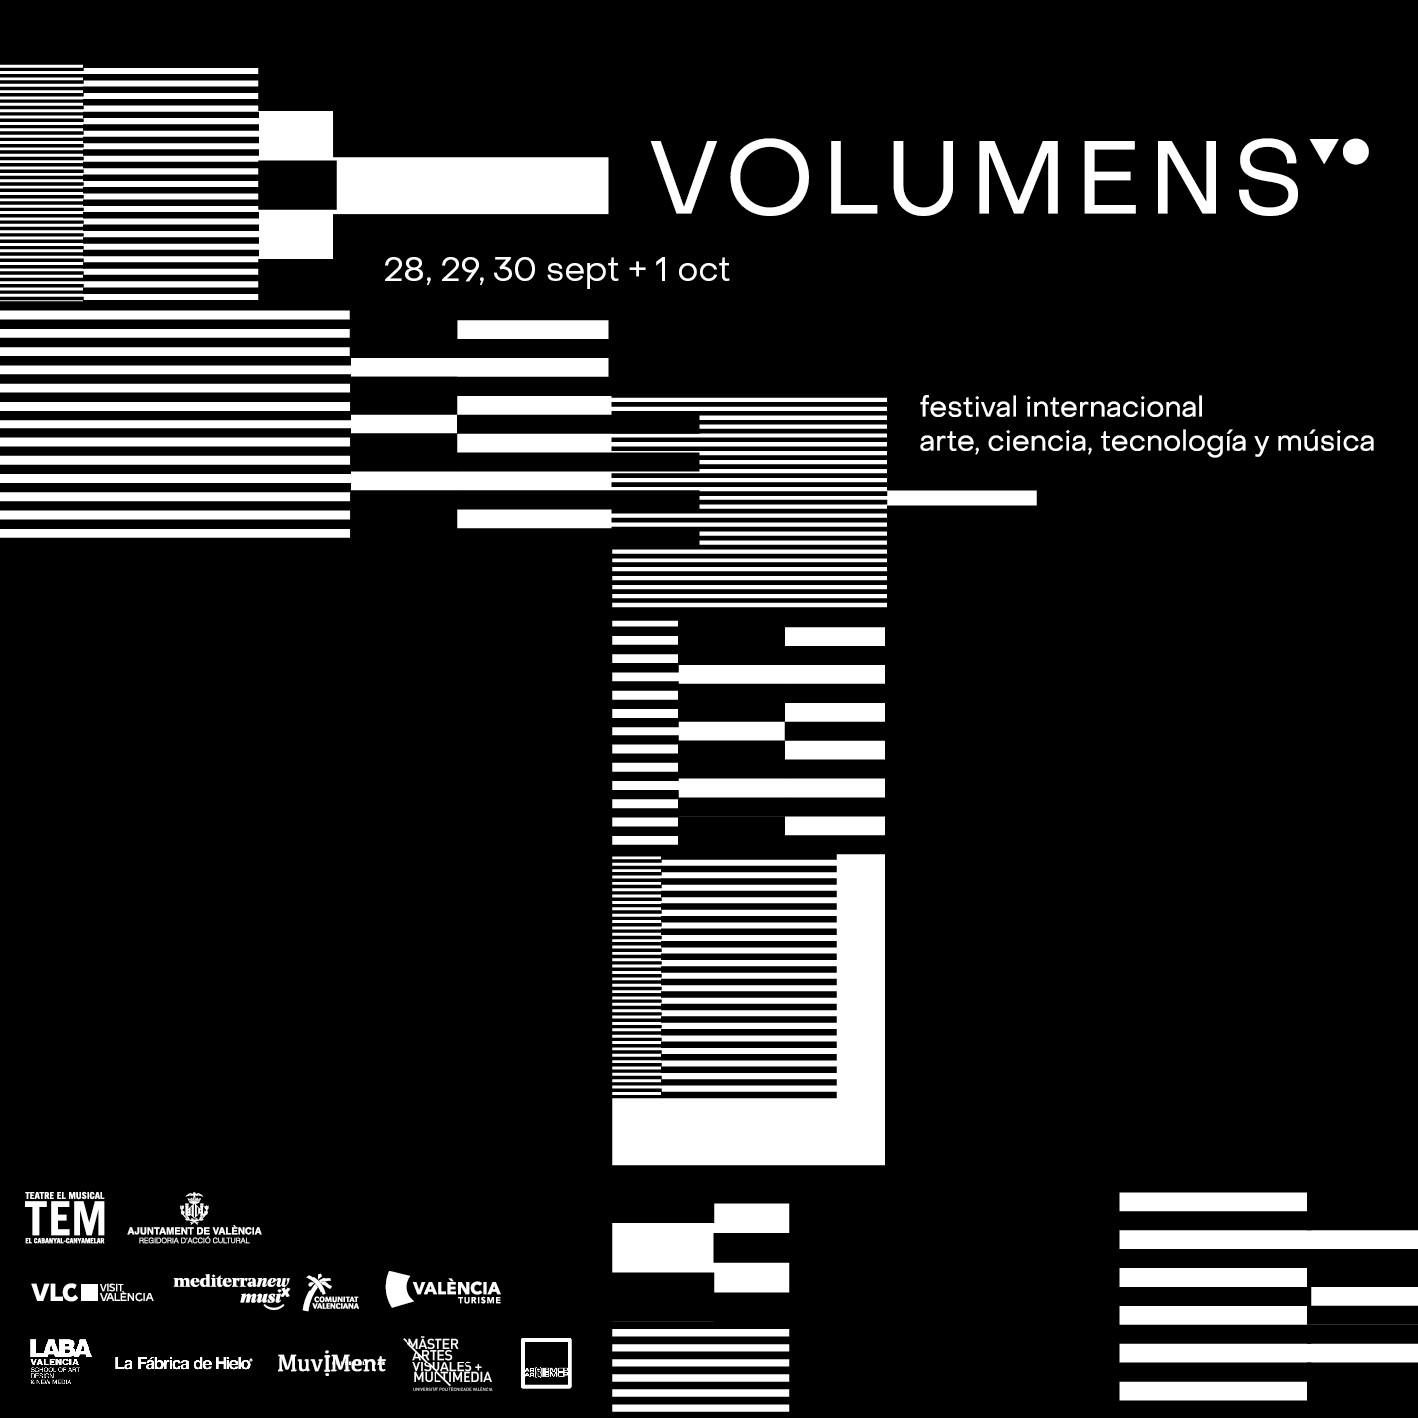 La sexta edición del festival VOlumens se celebrará del 28 de septiembre al 1 de octubre en varios espacios de la ciudad